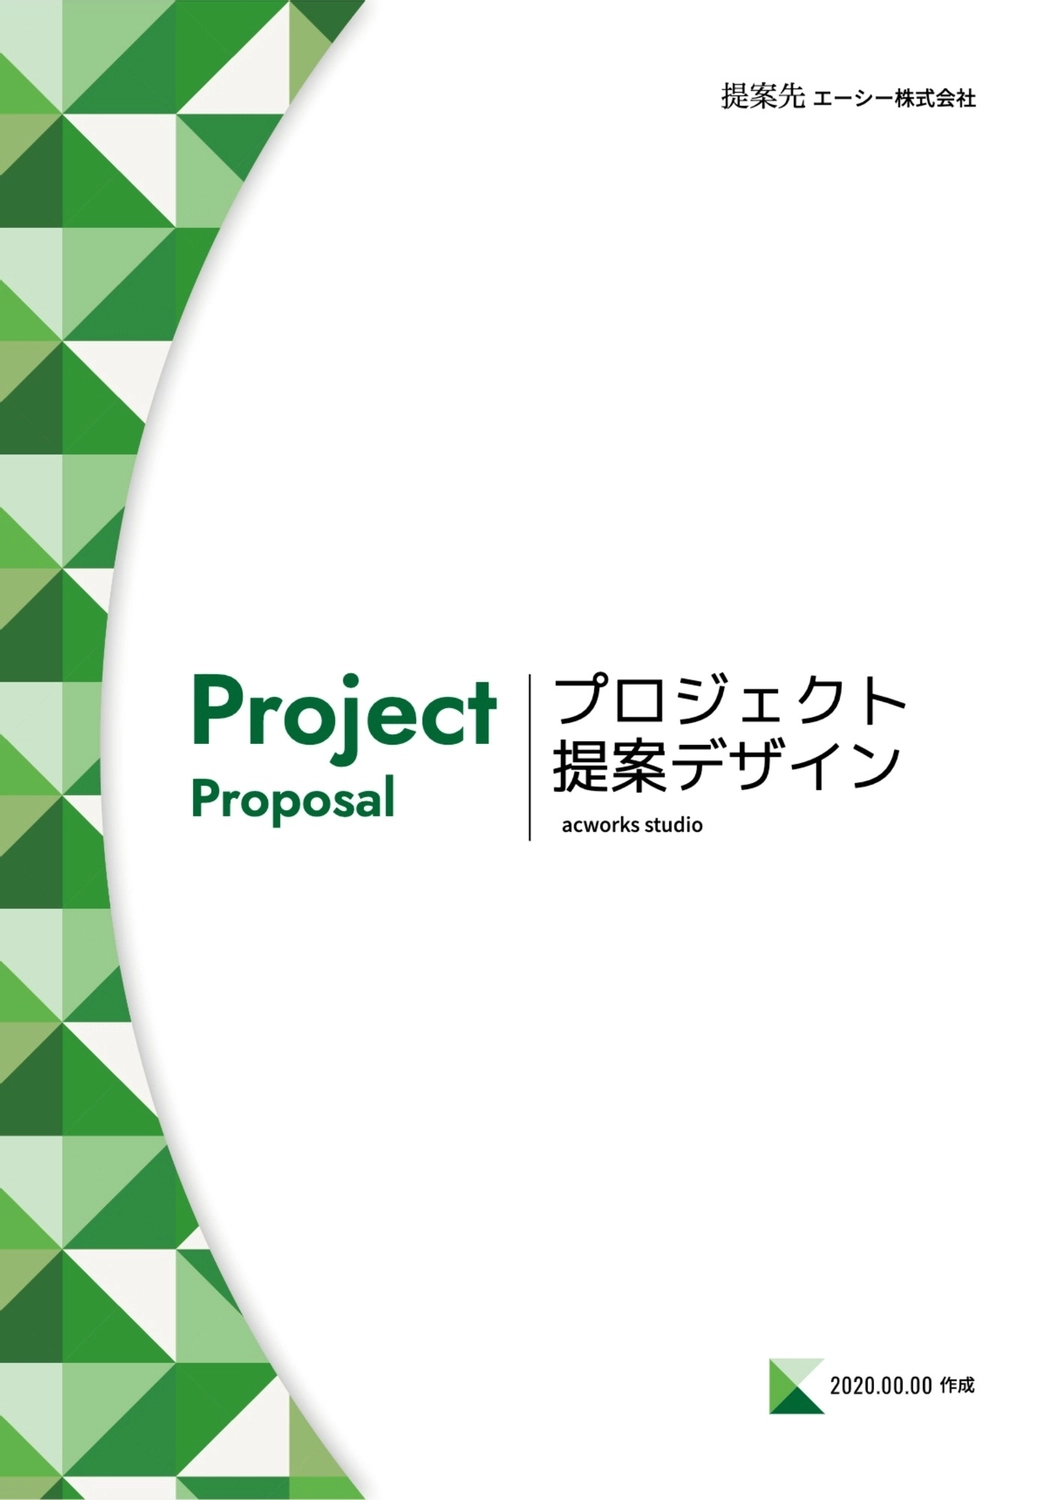 プロジェクト提案デザイン, green, create, design, A4 template